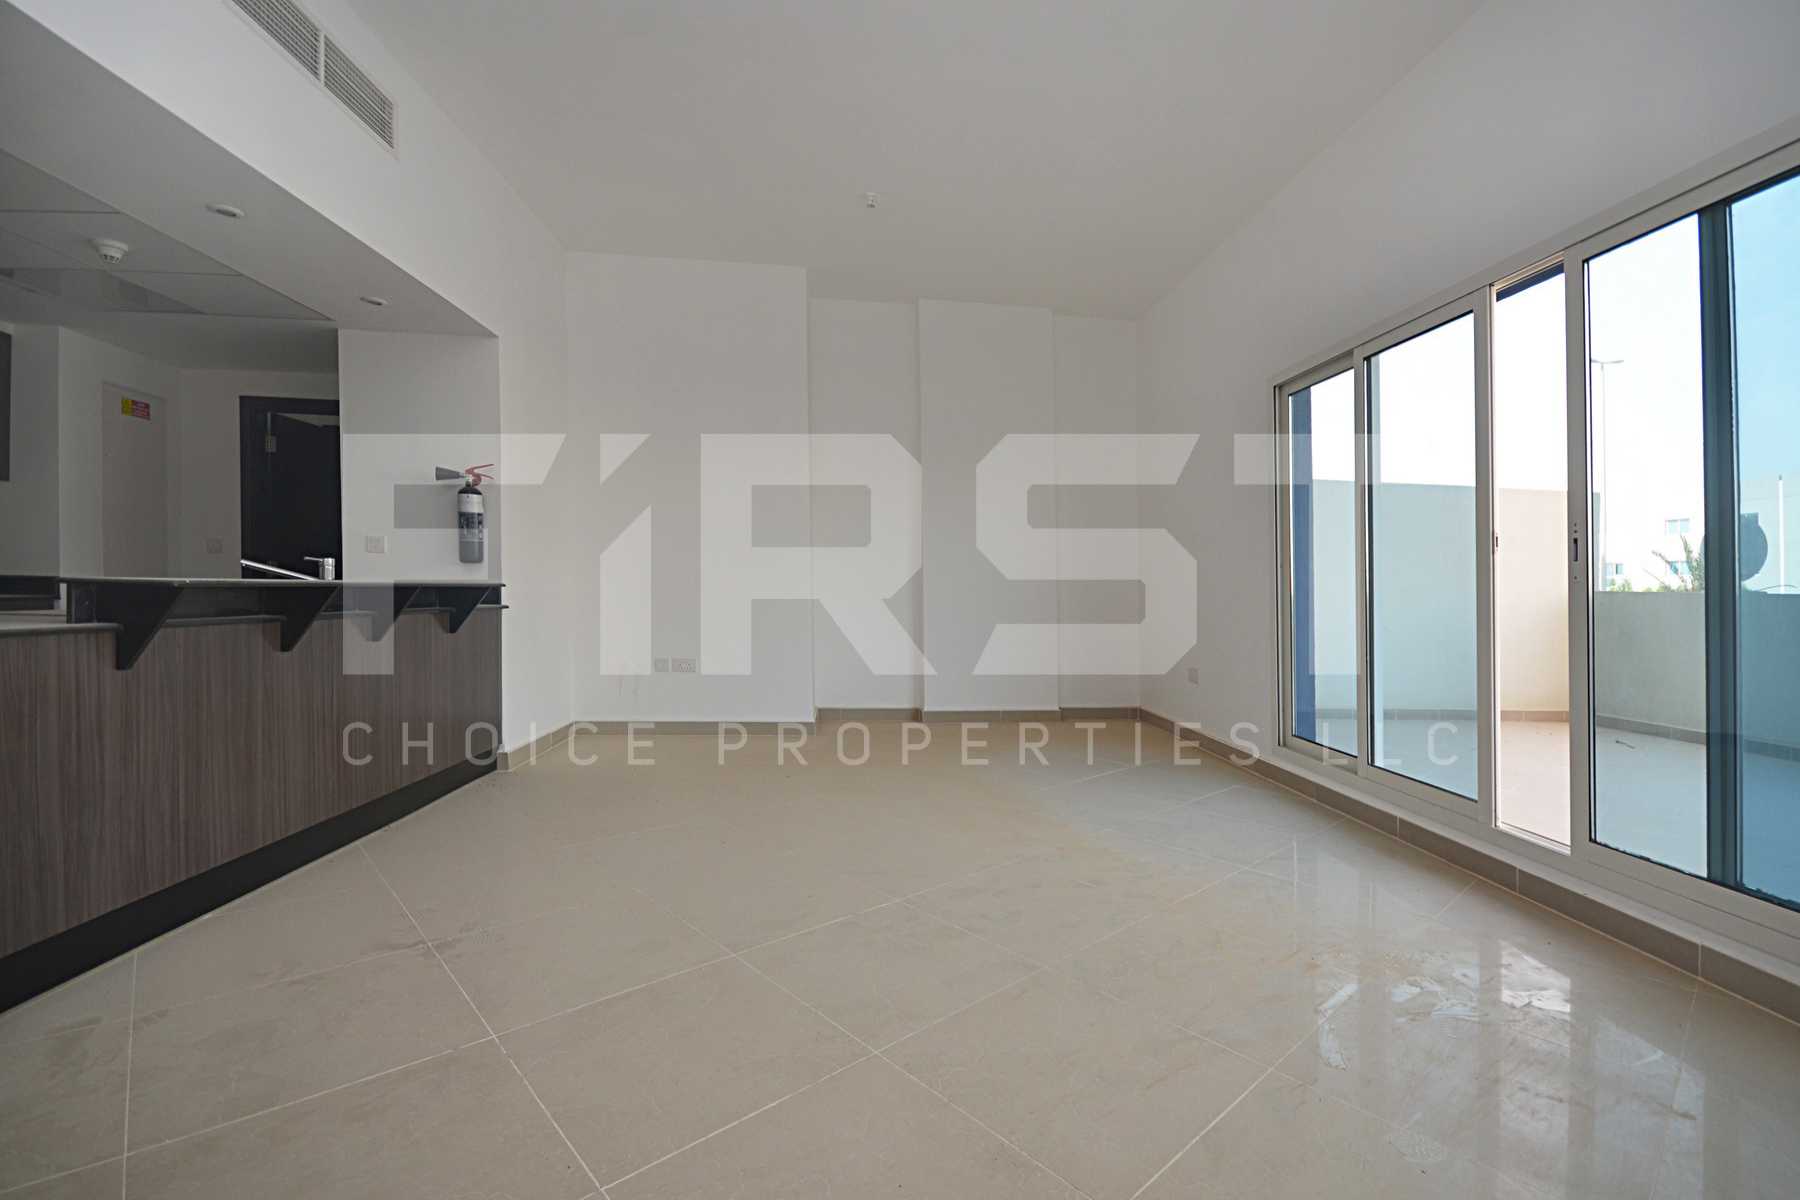 Internal Photo of 3 Bedroom Apartment Type G Ground Floor in Al Reef Downtown Al Reef Abu Dhabi UAE 220 sq.m 2368sq.ft (1).jpg